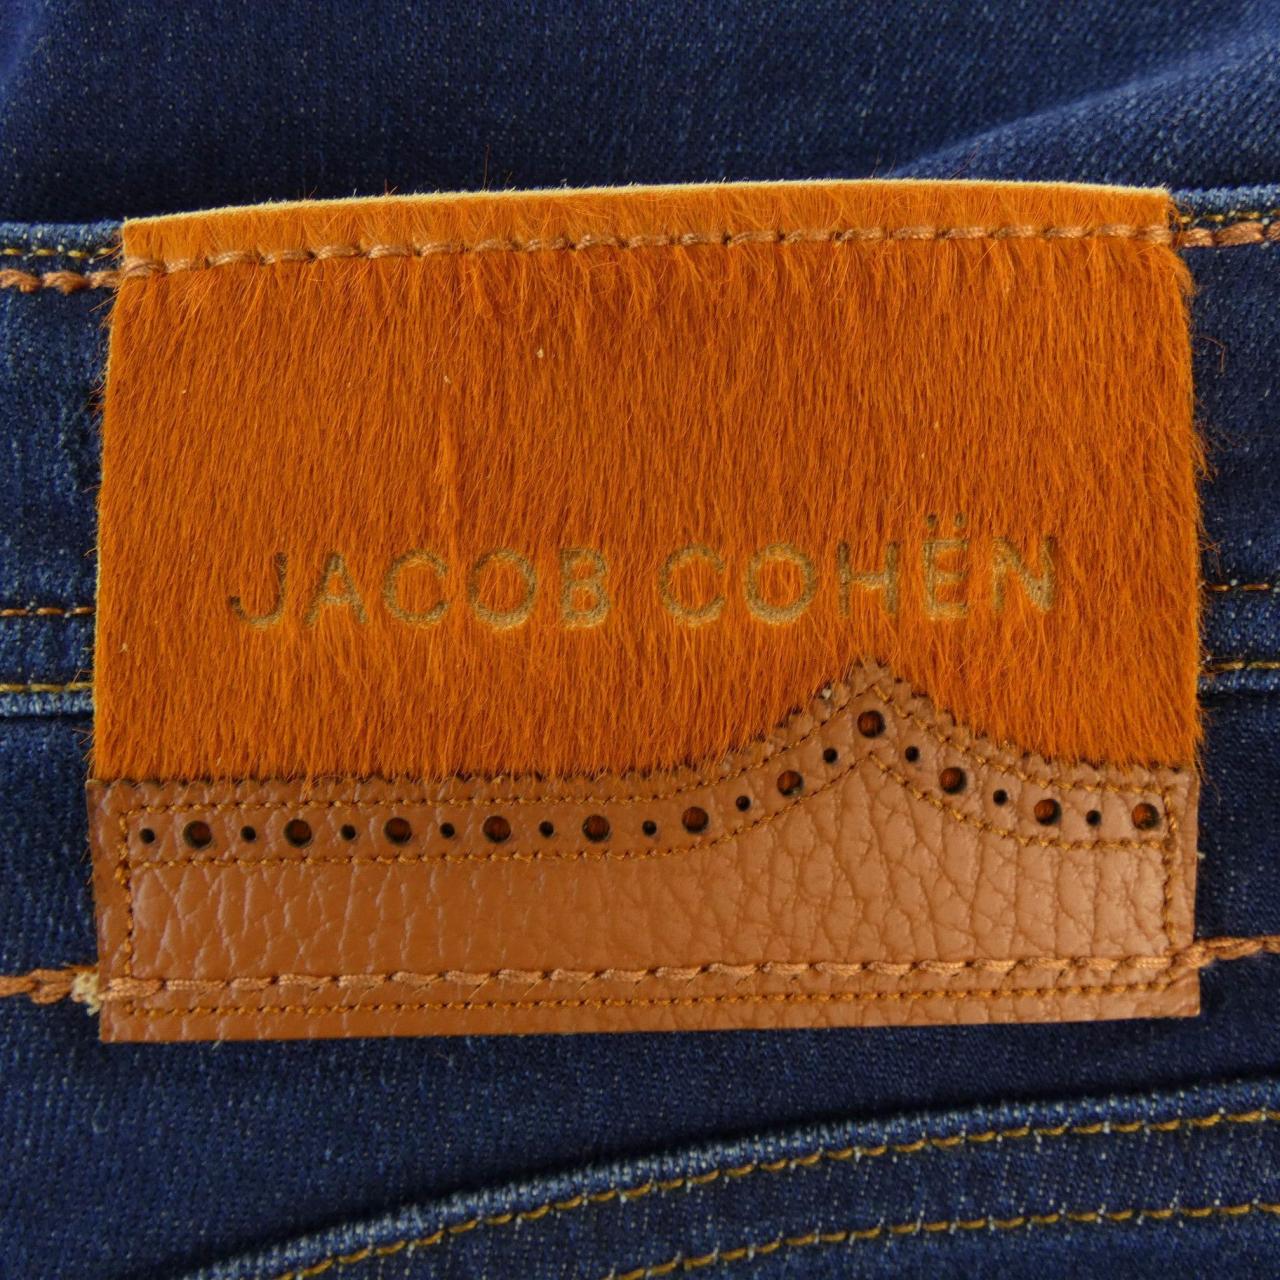 Jacob Cohen jeans